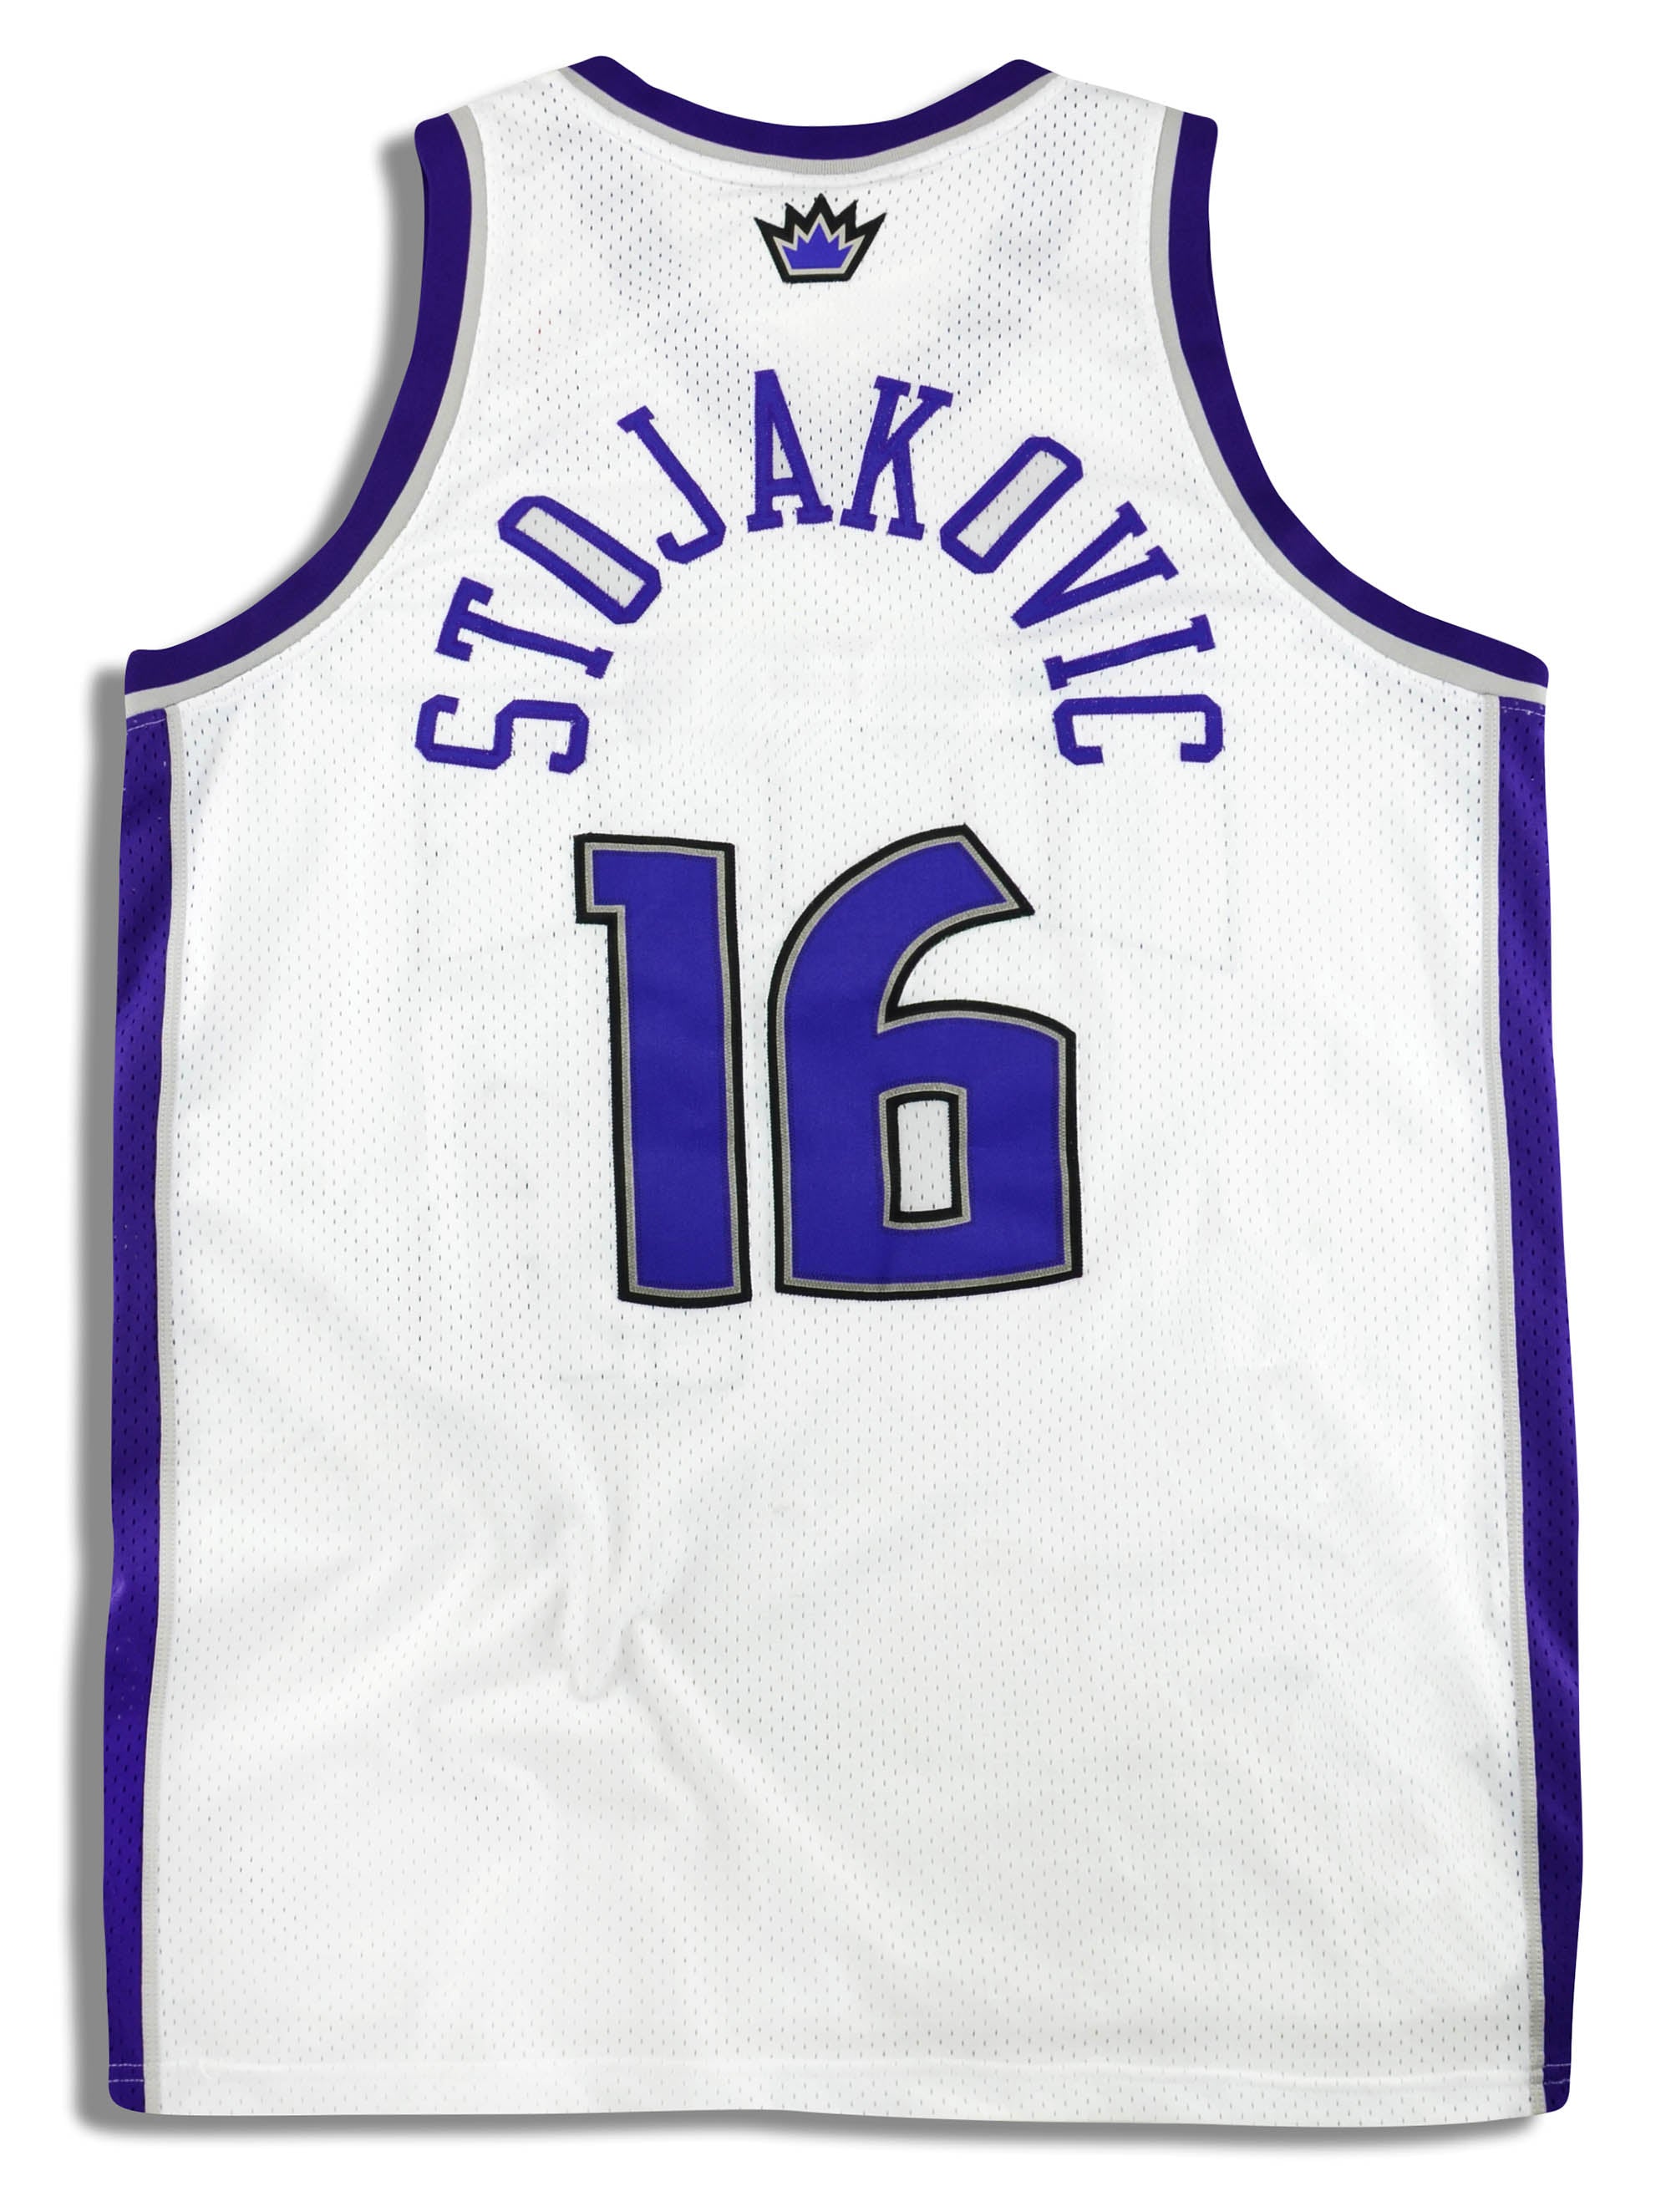 Vintage NWT Peja Stojakovic Sacramento Kings Reebok NBA Jersey